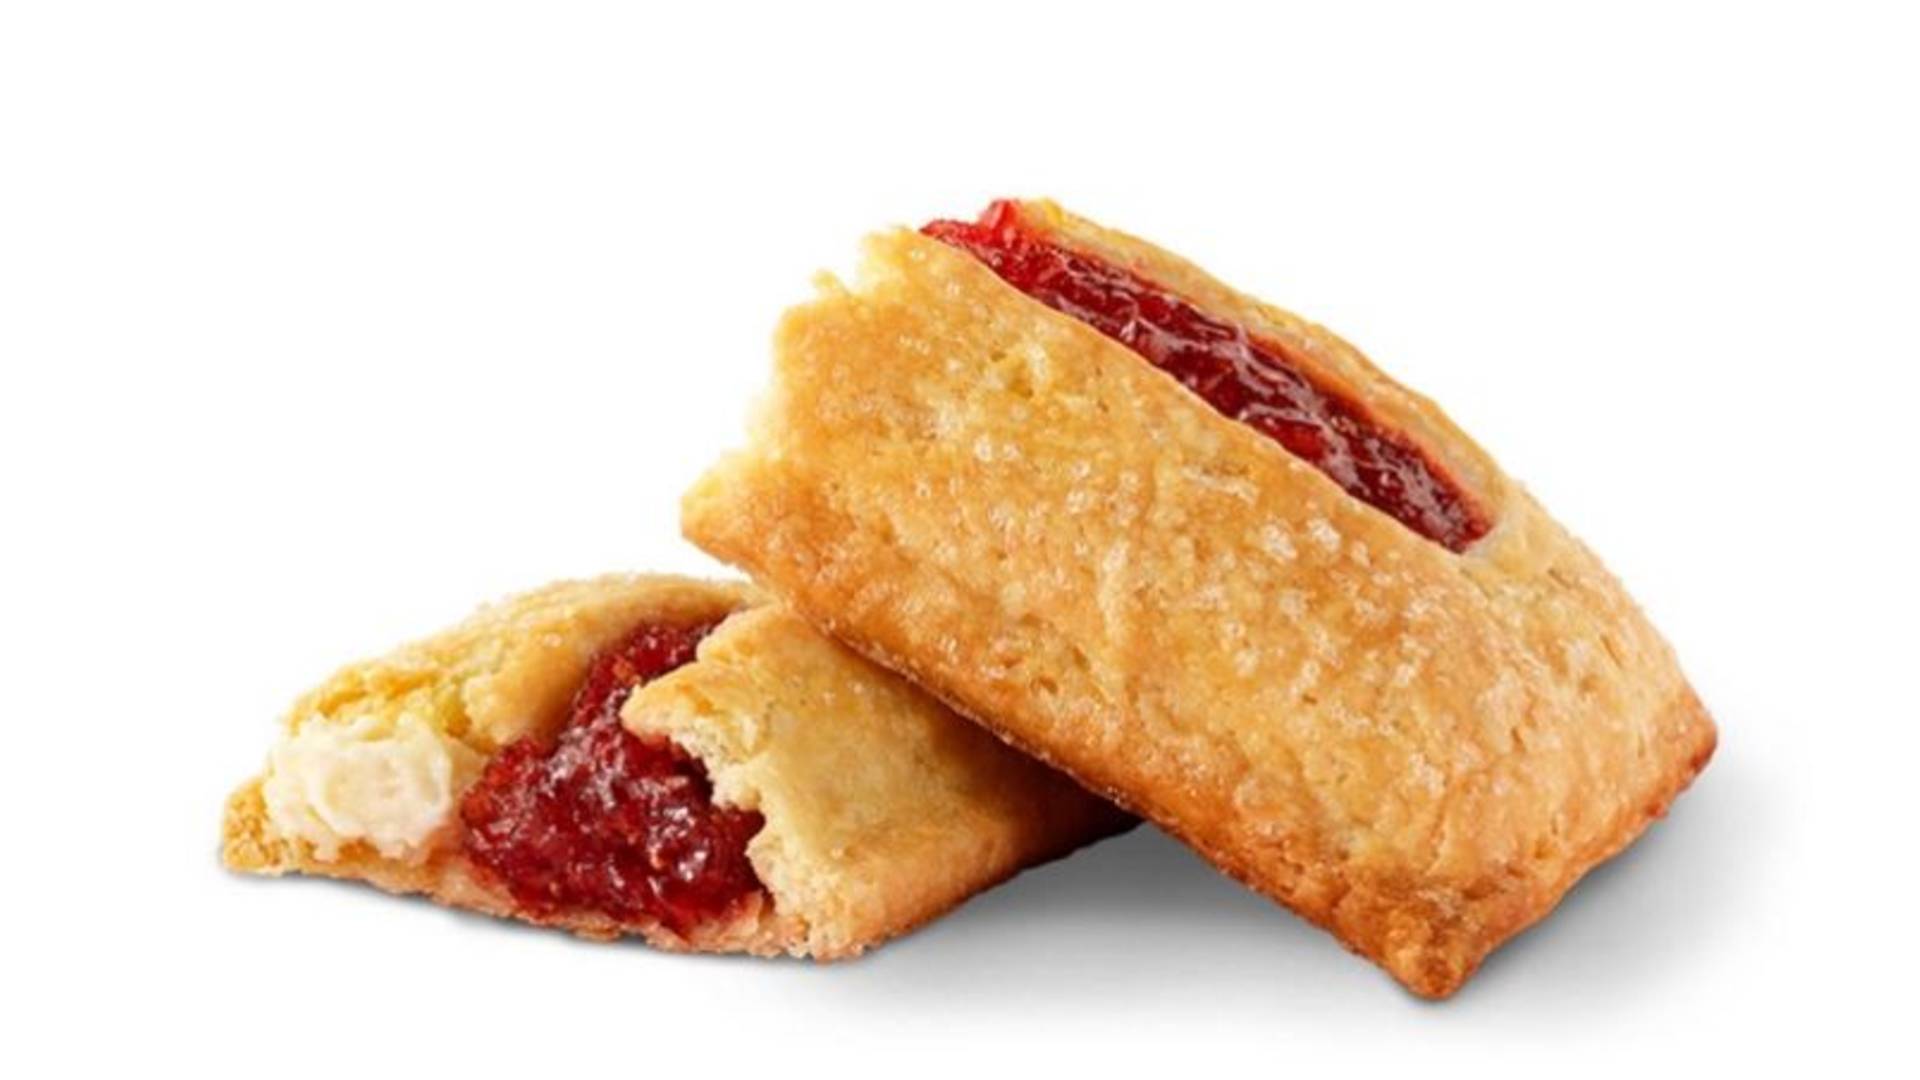 McDonalds Launching New White Choc Strawberry Cream Pie ...